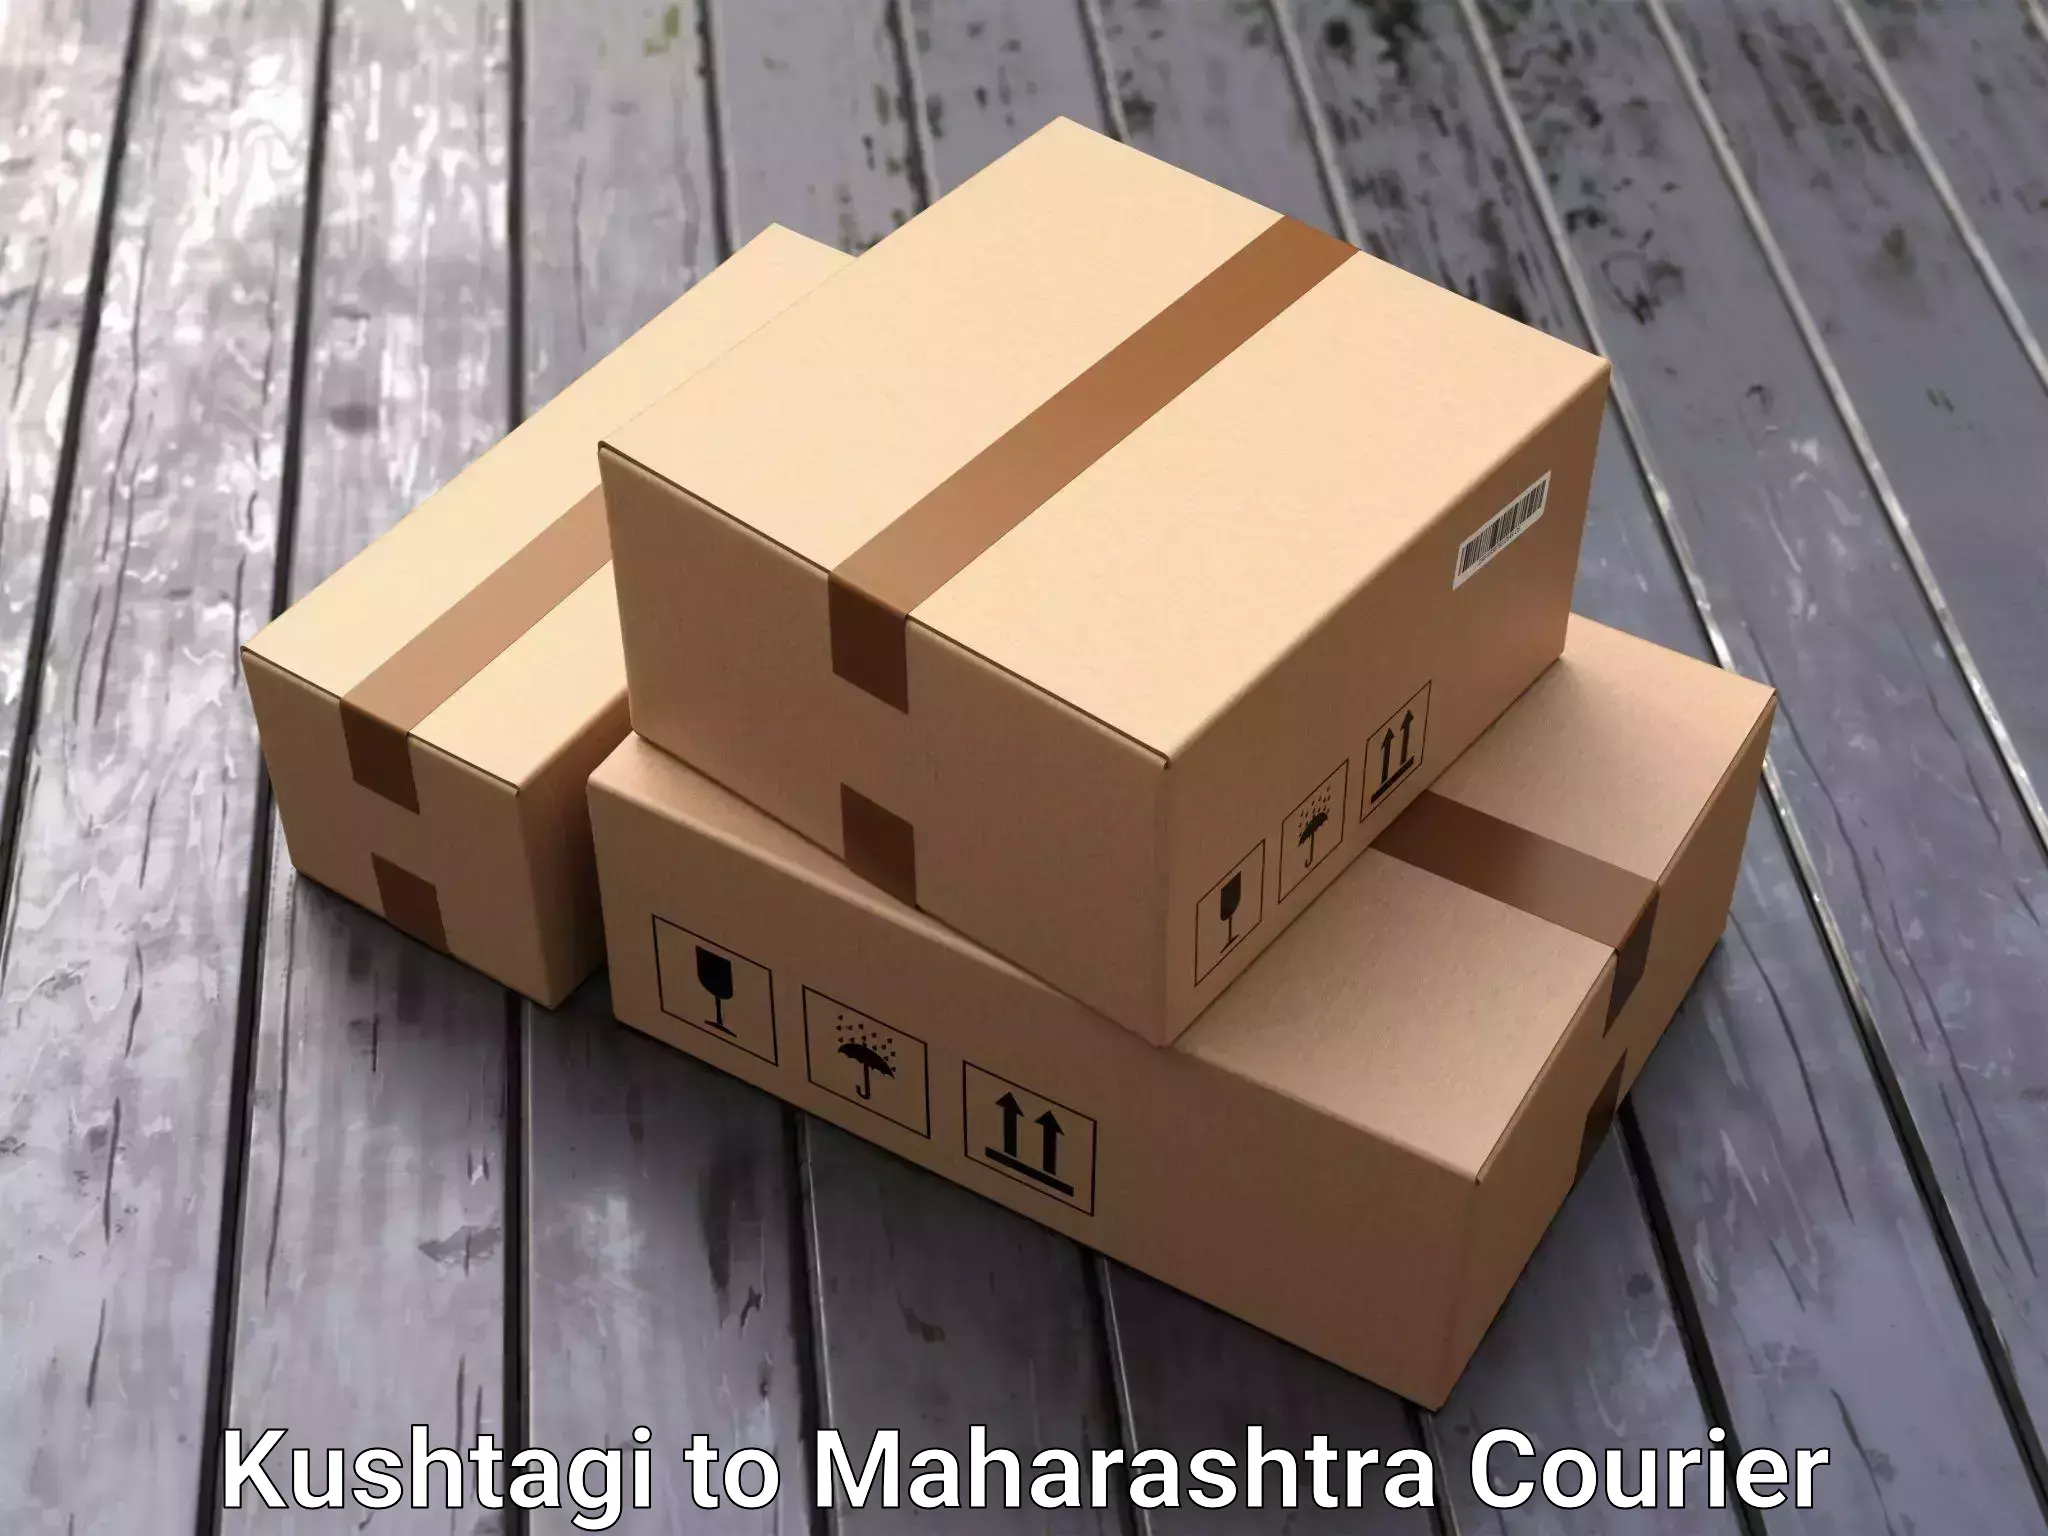 Furniture shipping services Kushtagi to Pimpri Chinchwad